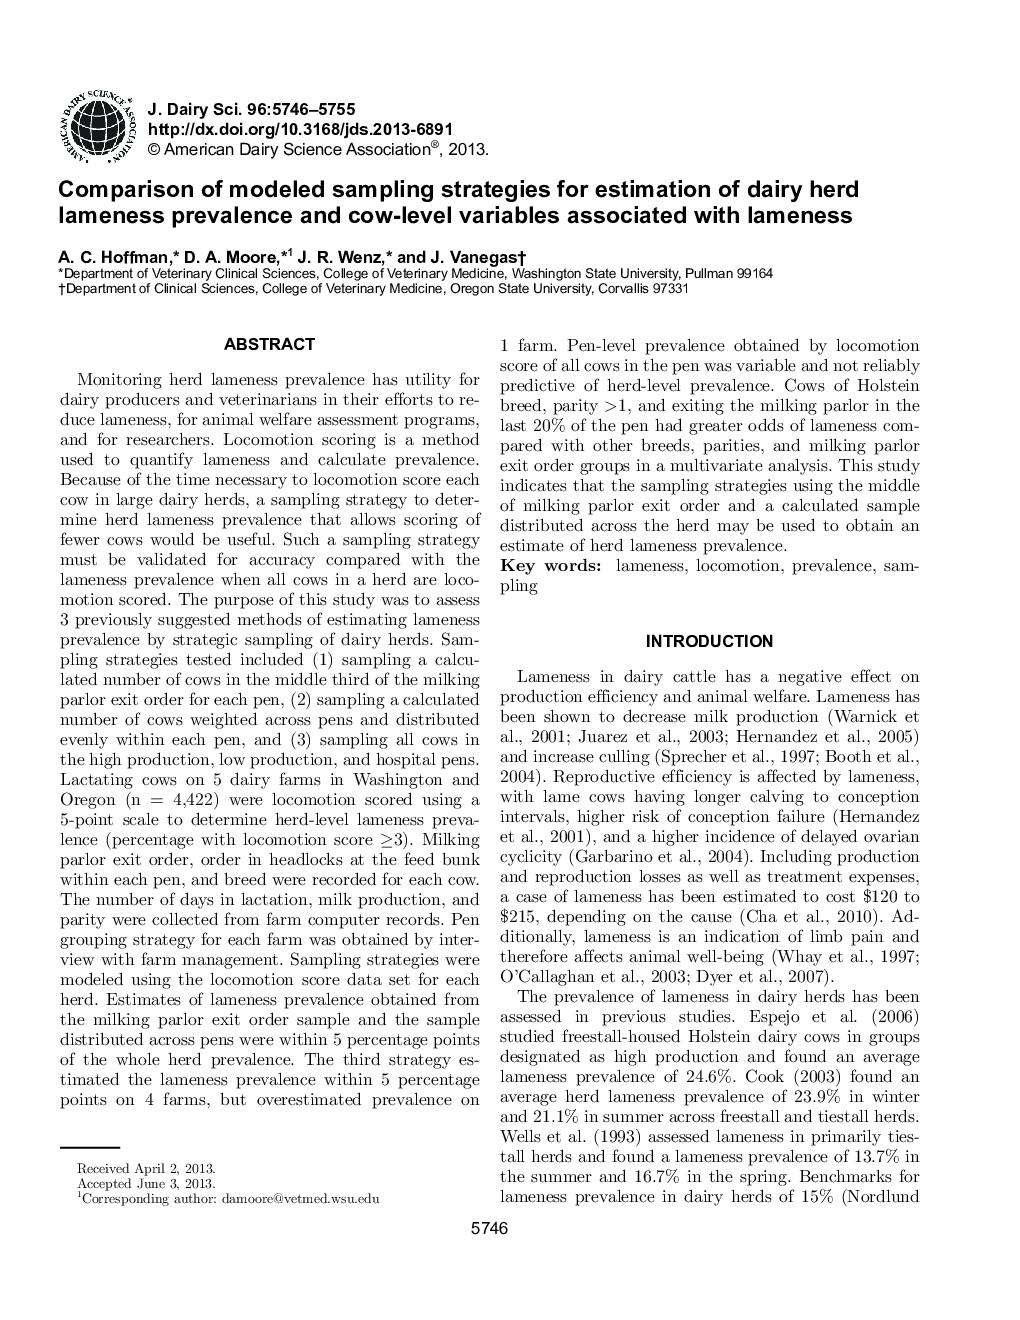 مقایسه استراتژی های نمونه برداری مدل شده برای تخمین شیوع گاوهای شیری و متغیرهای گاو در ارتباط با لنگش 